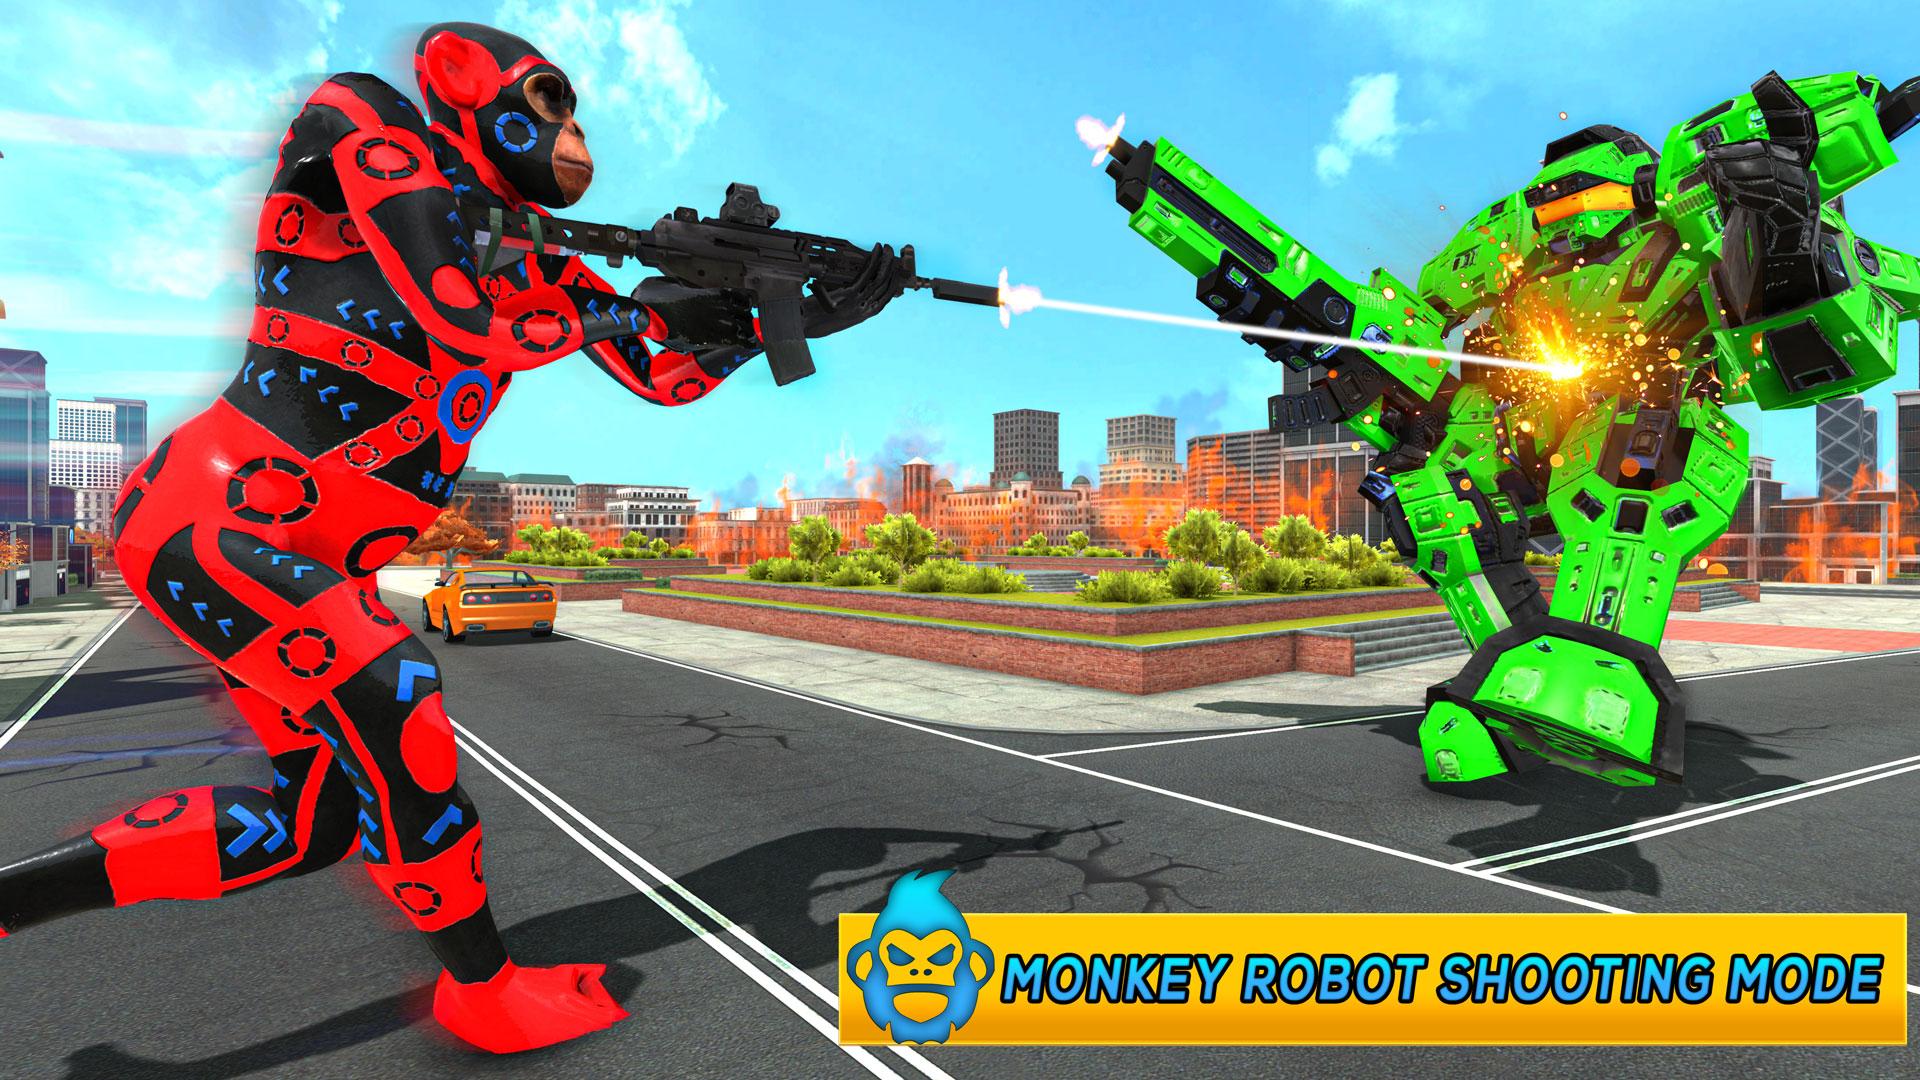 Monkey Car Robot Transformation Game 1.0 Screenshot 4